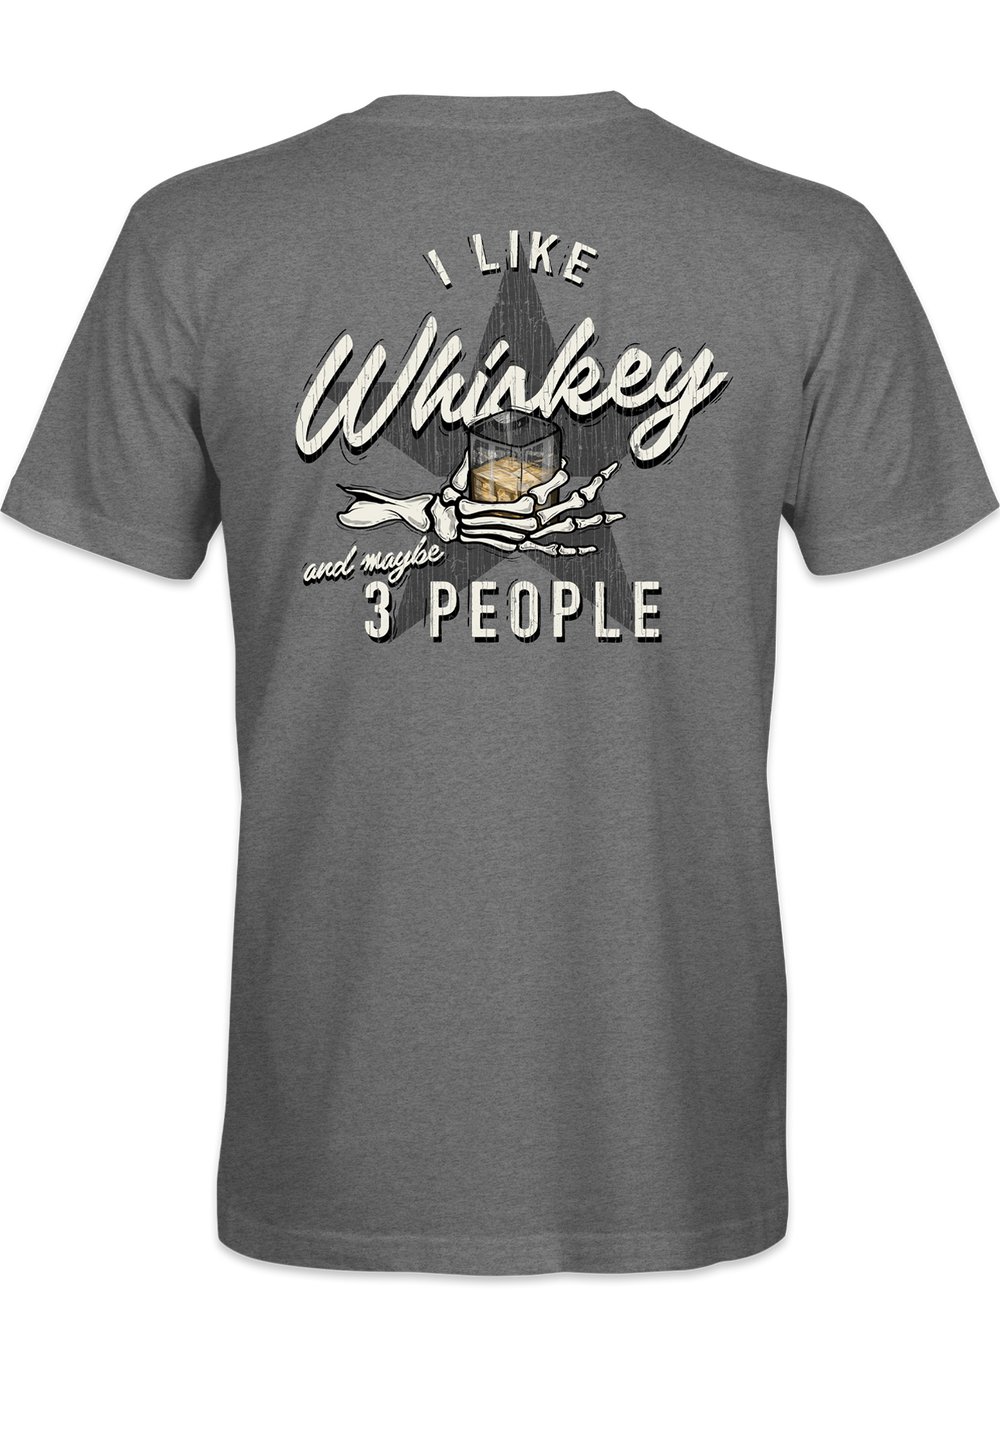 I like Whiskey